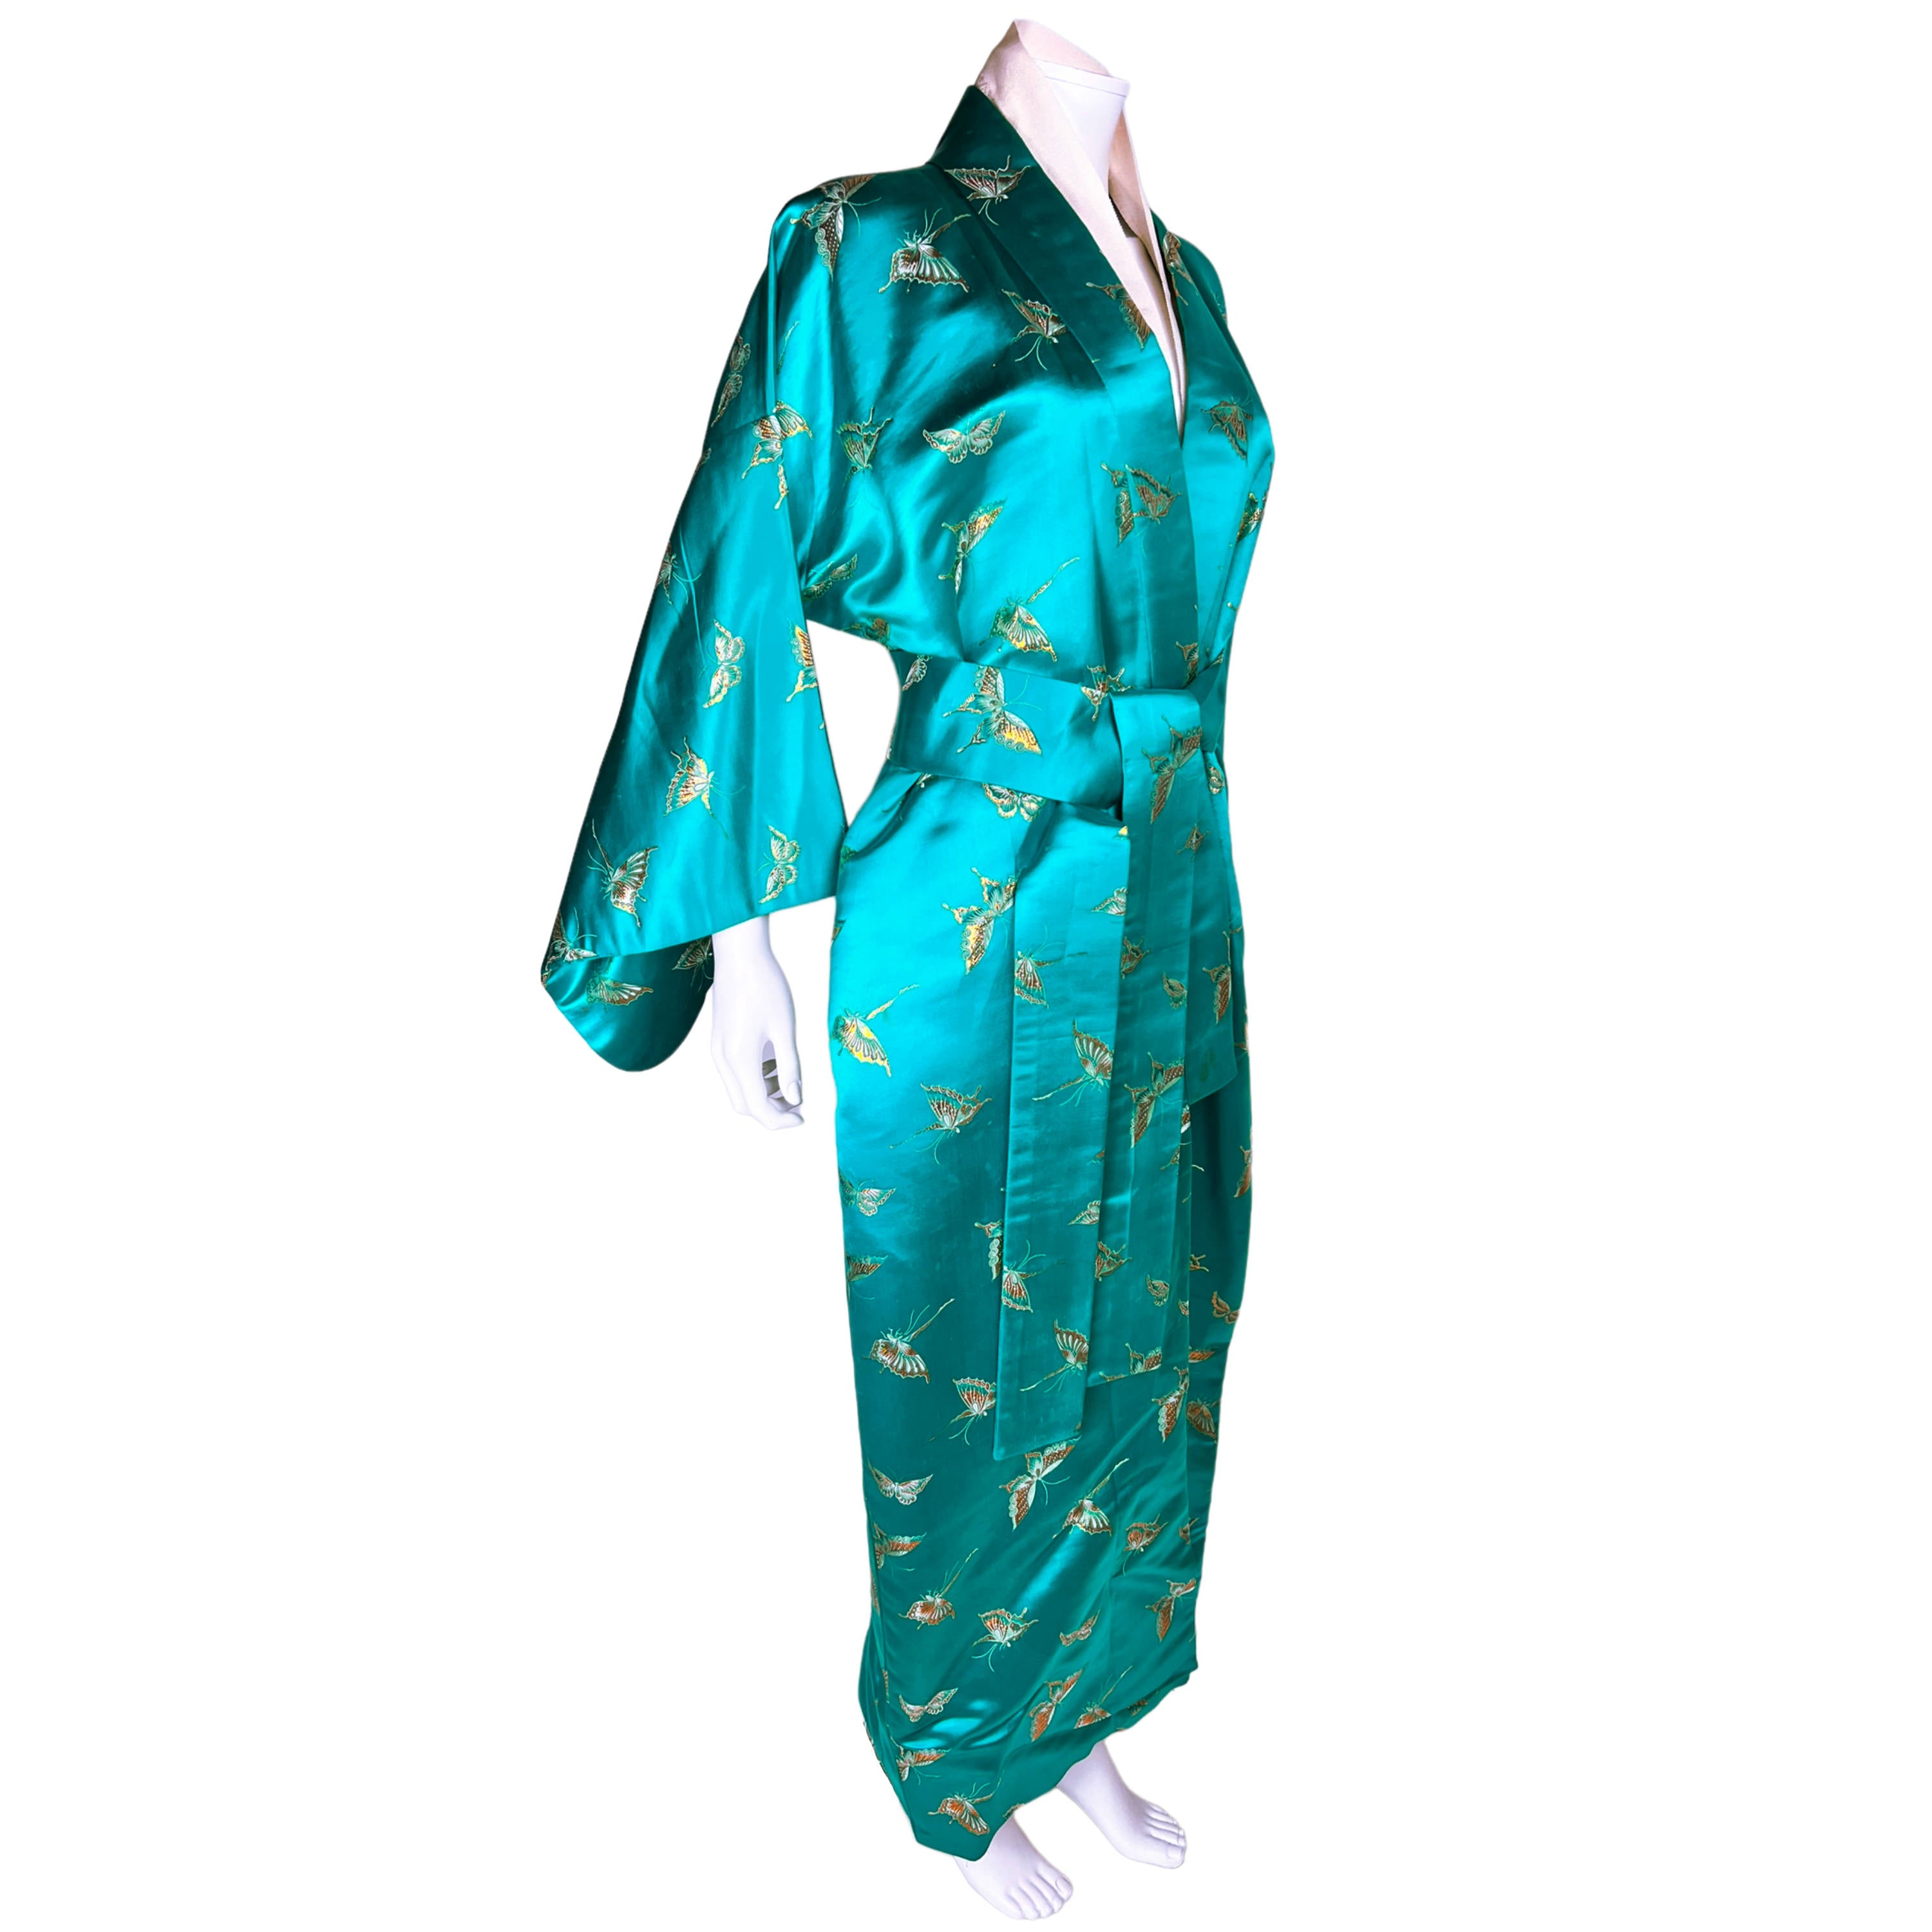 Minifaceminigirl Kimono Robes for Women Long Satin Robe Floral Silk Robes  Kimonos Bathrobe Dressing Gown, One Size - Walmart.com